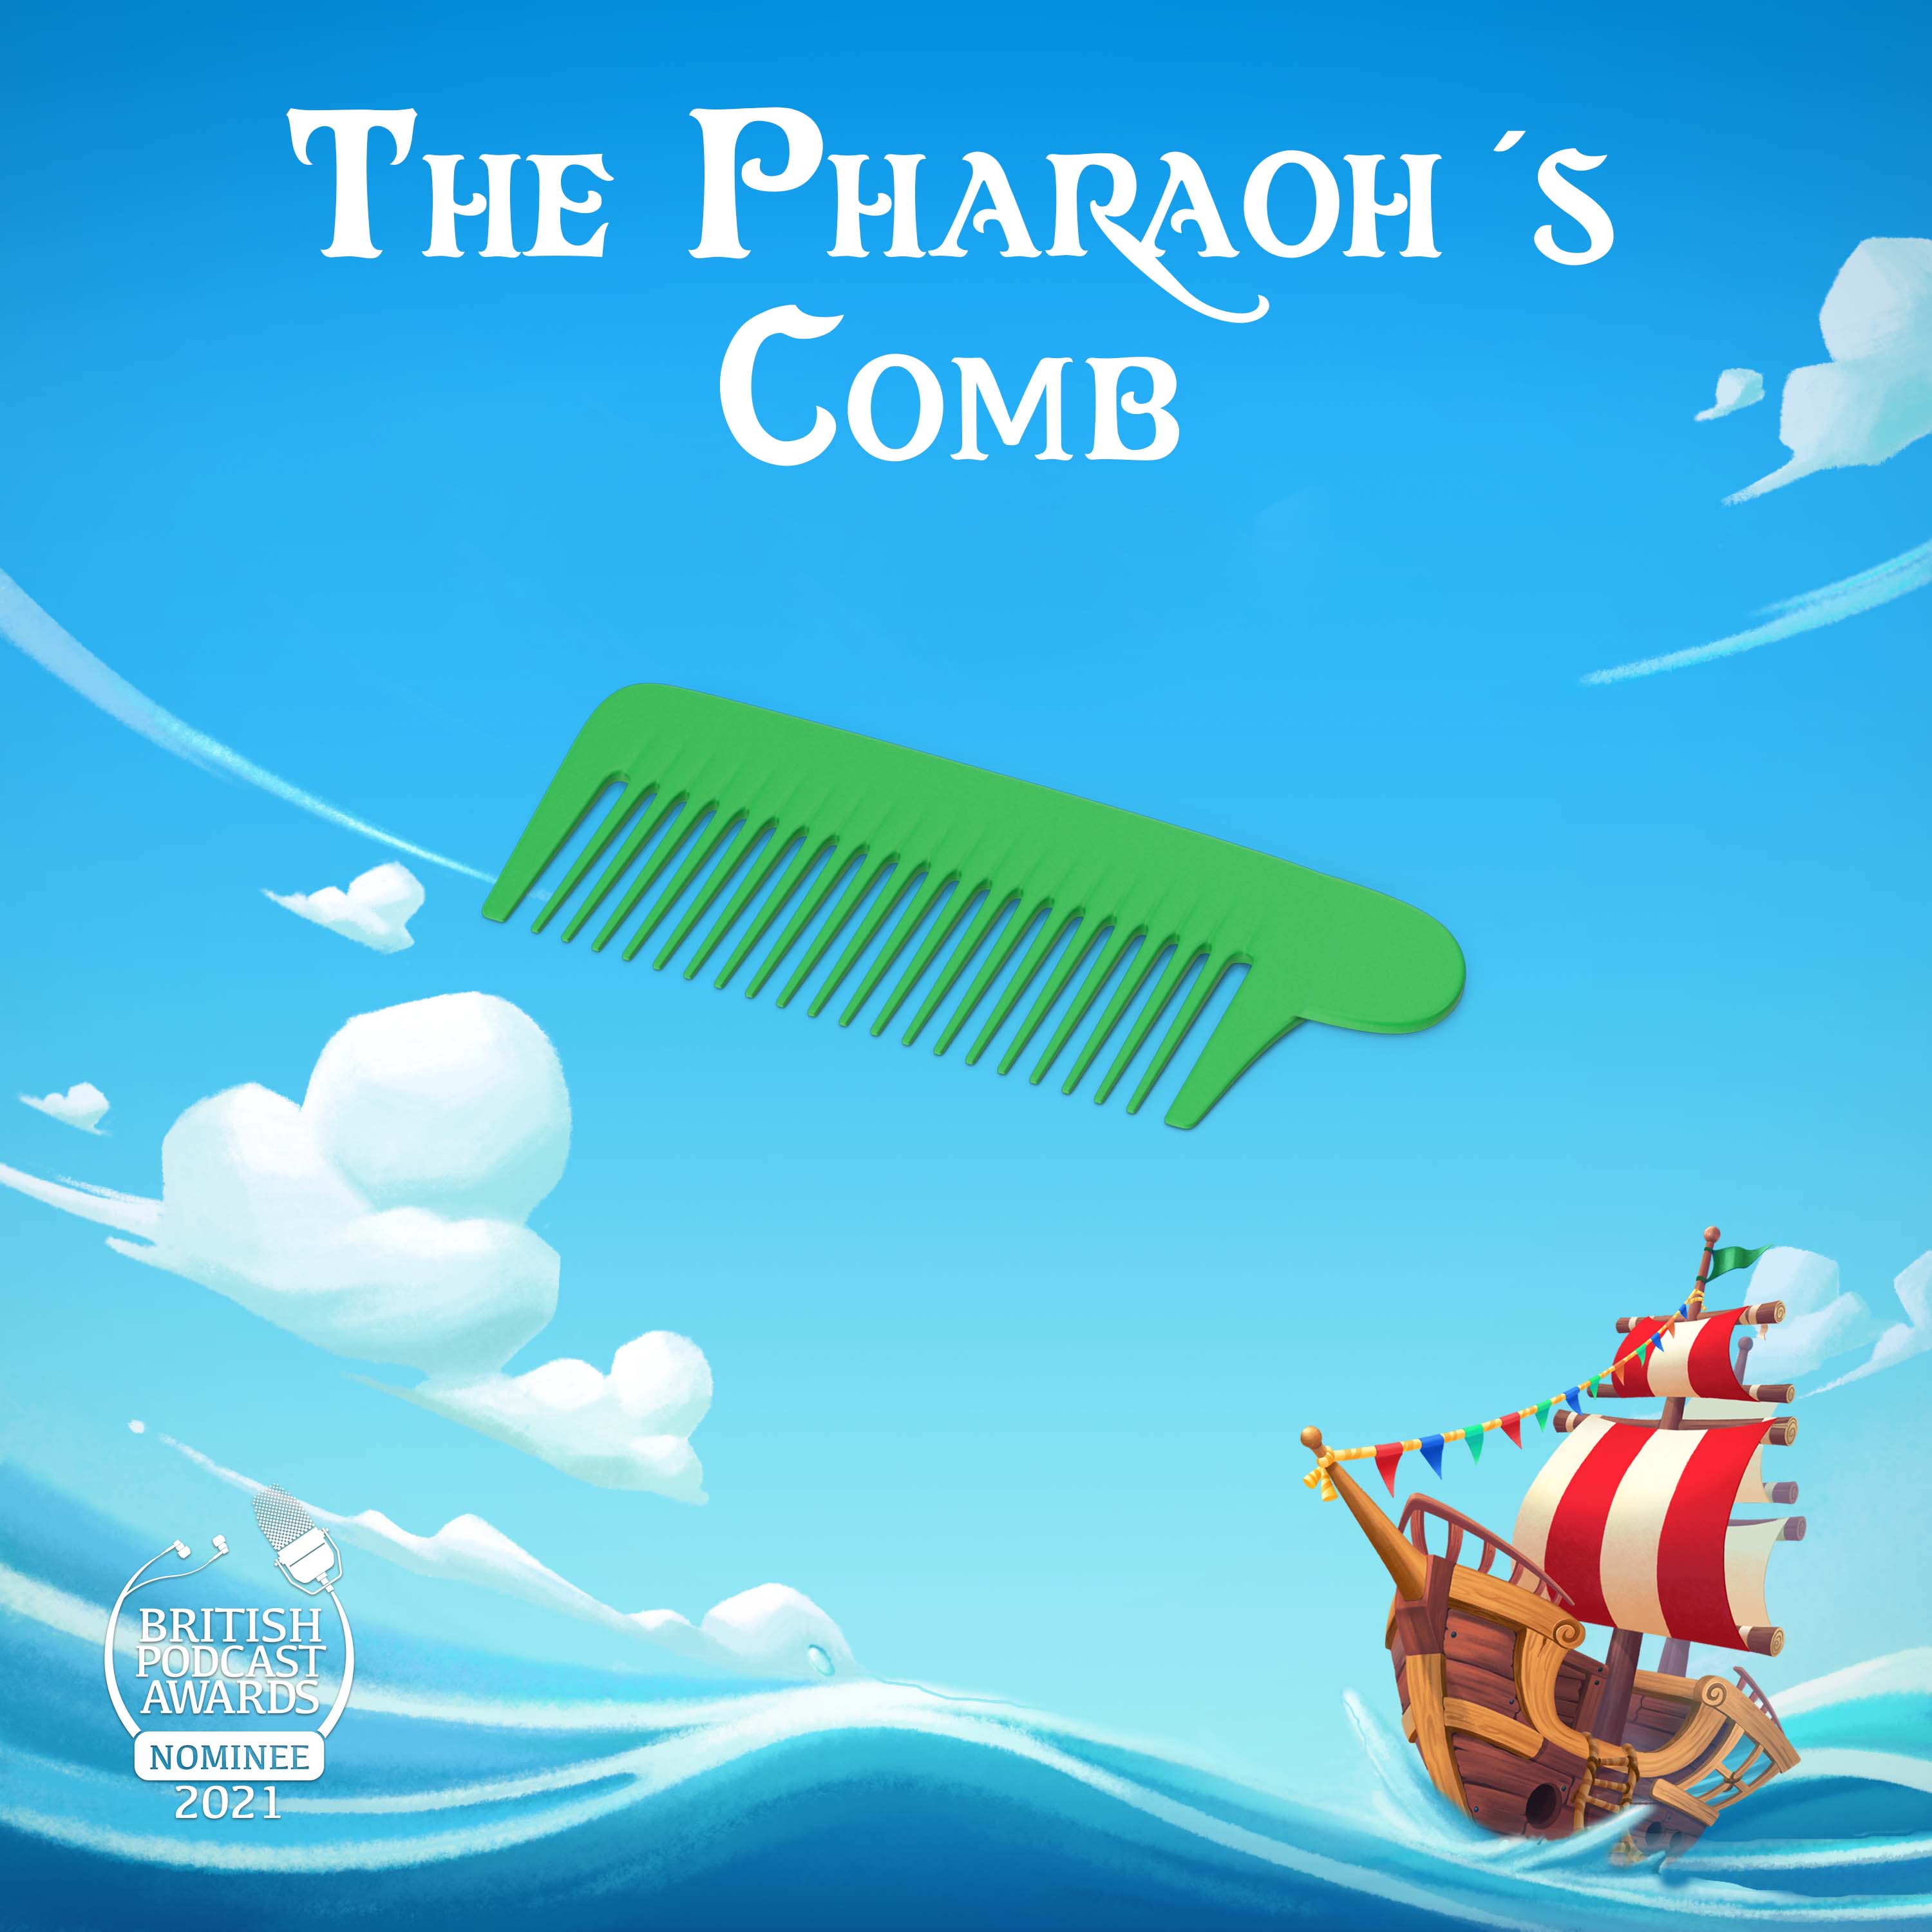 The Pharaoh’s Comb